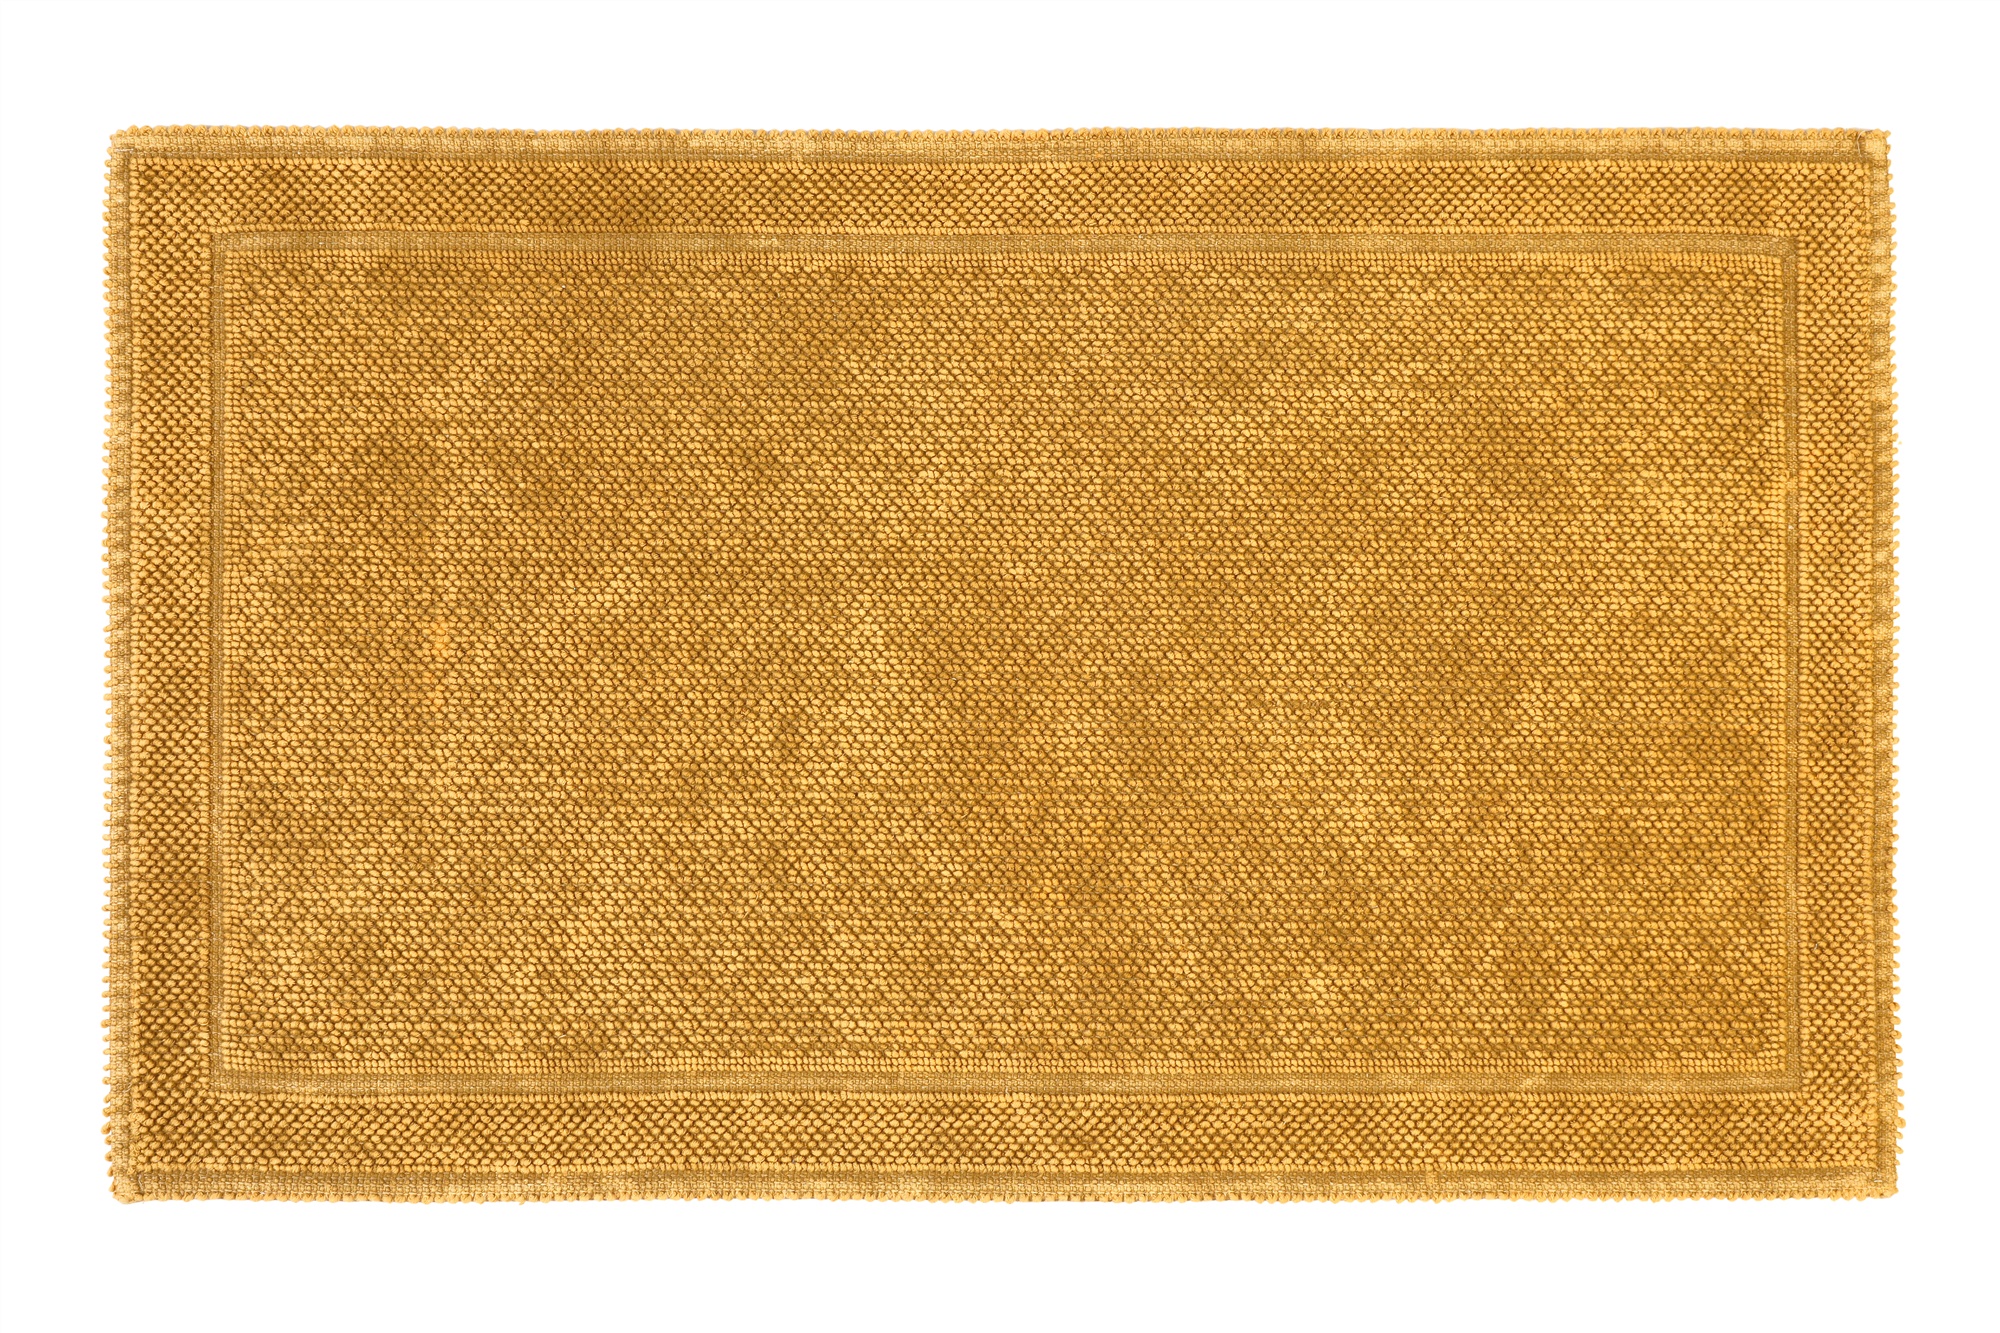 Ковер Alize Stoned, горчичный, Турция, палас на пол 80x150 см, хлопок